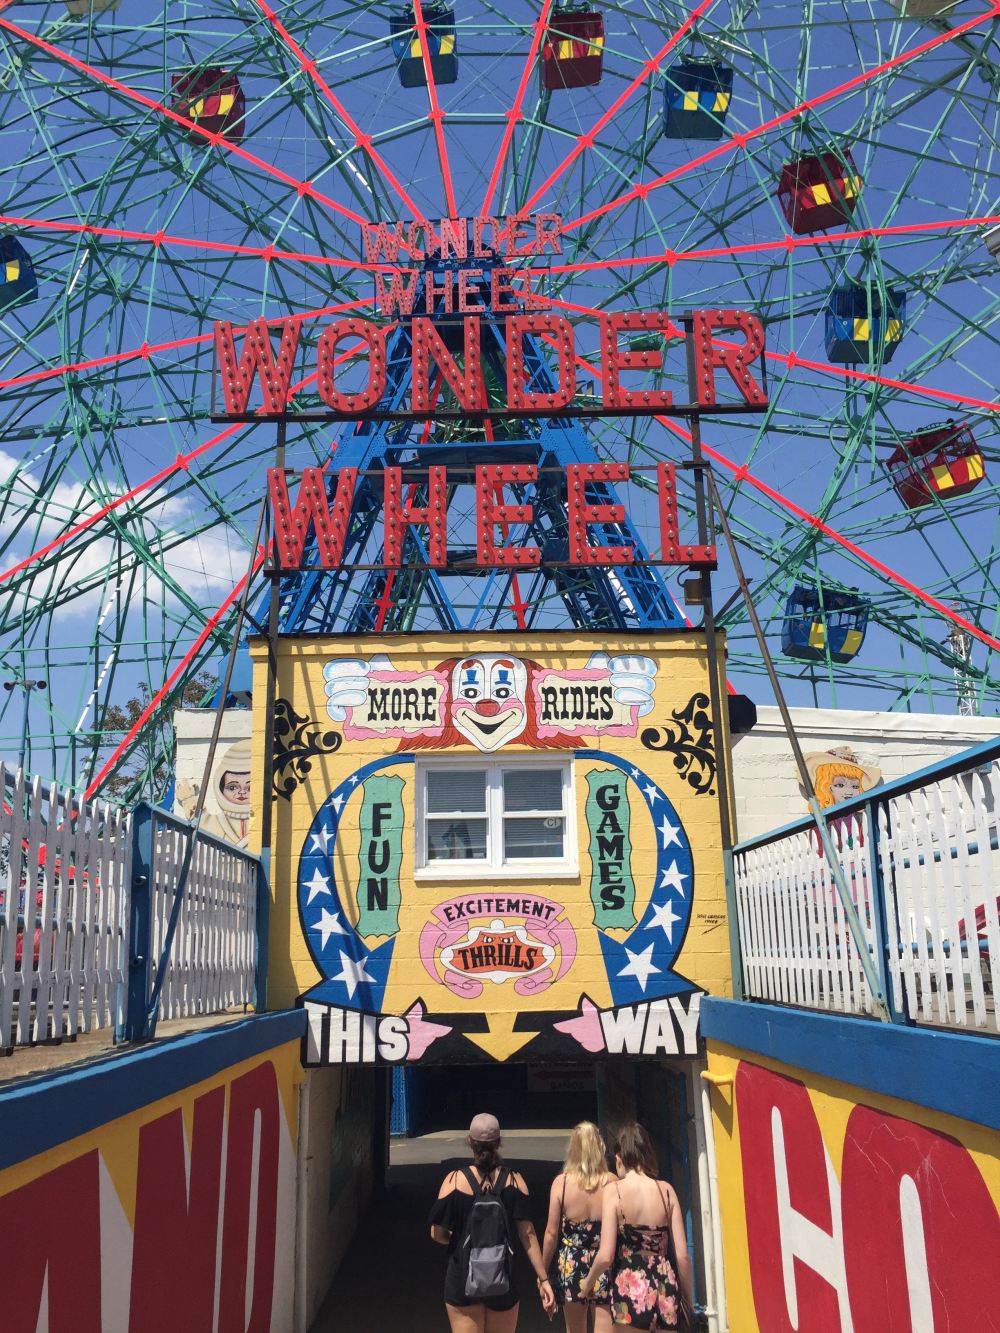 Walking through the Wonder Wheel